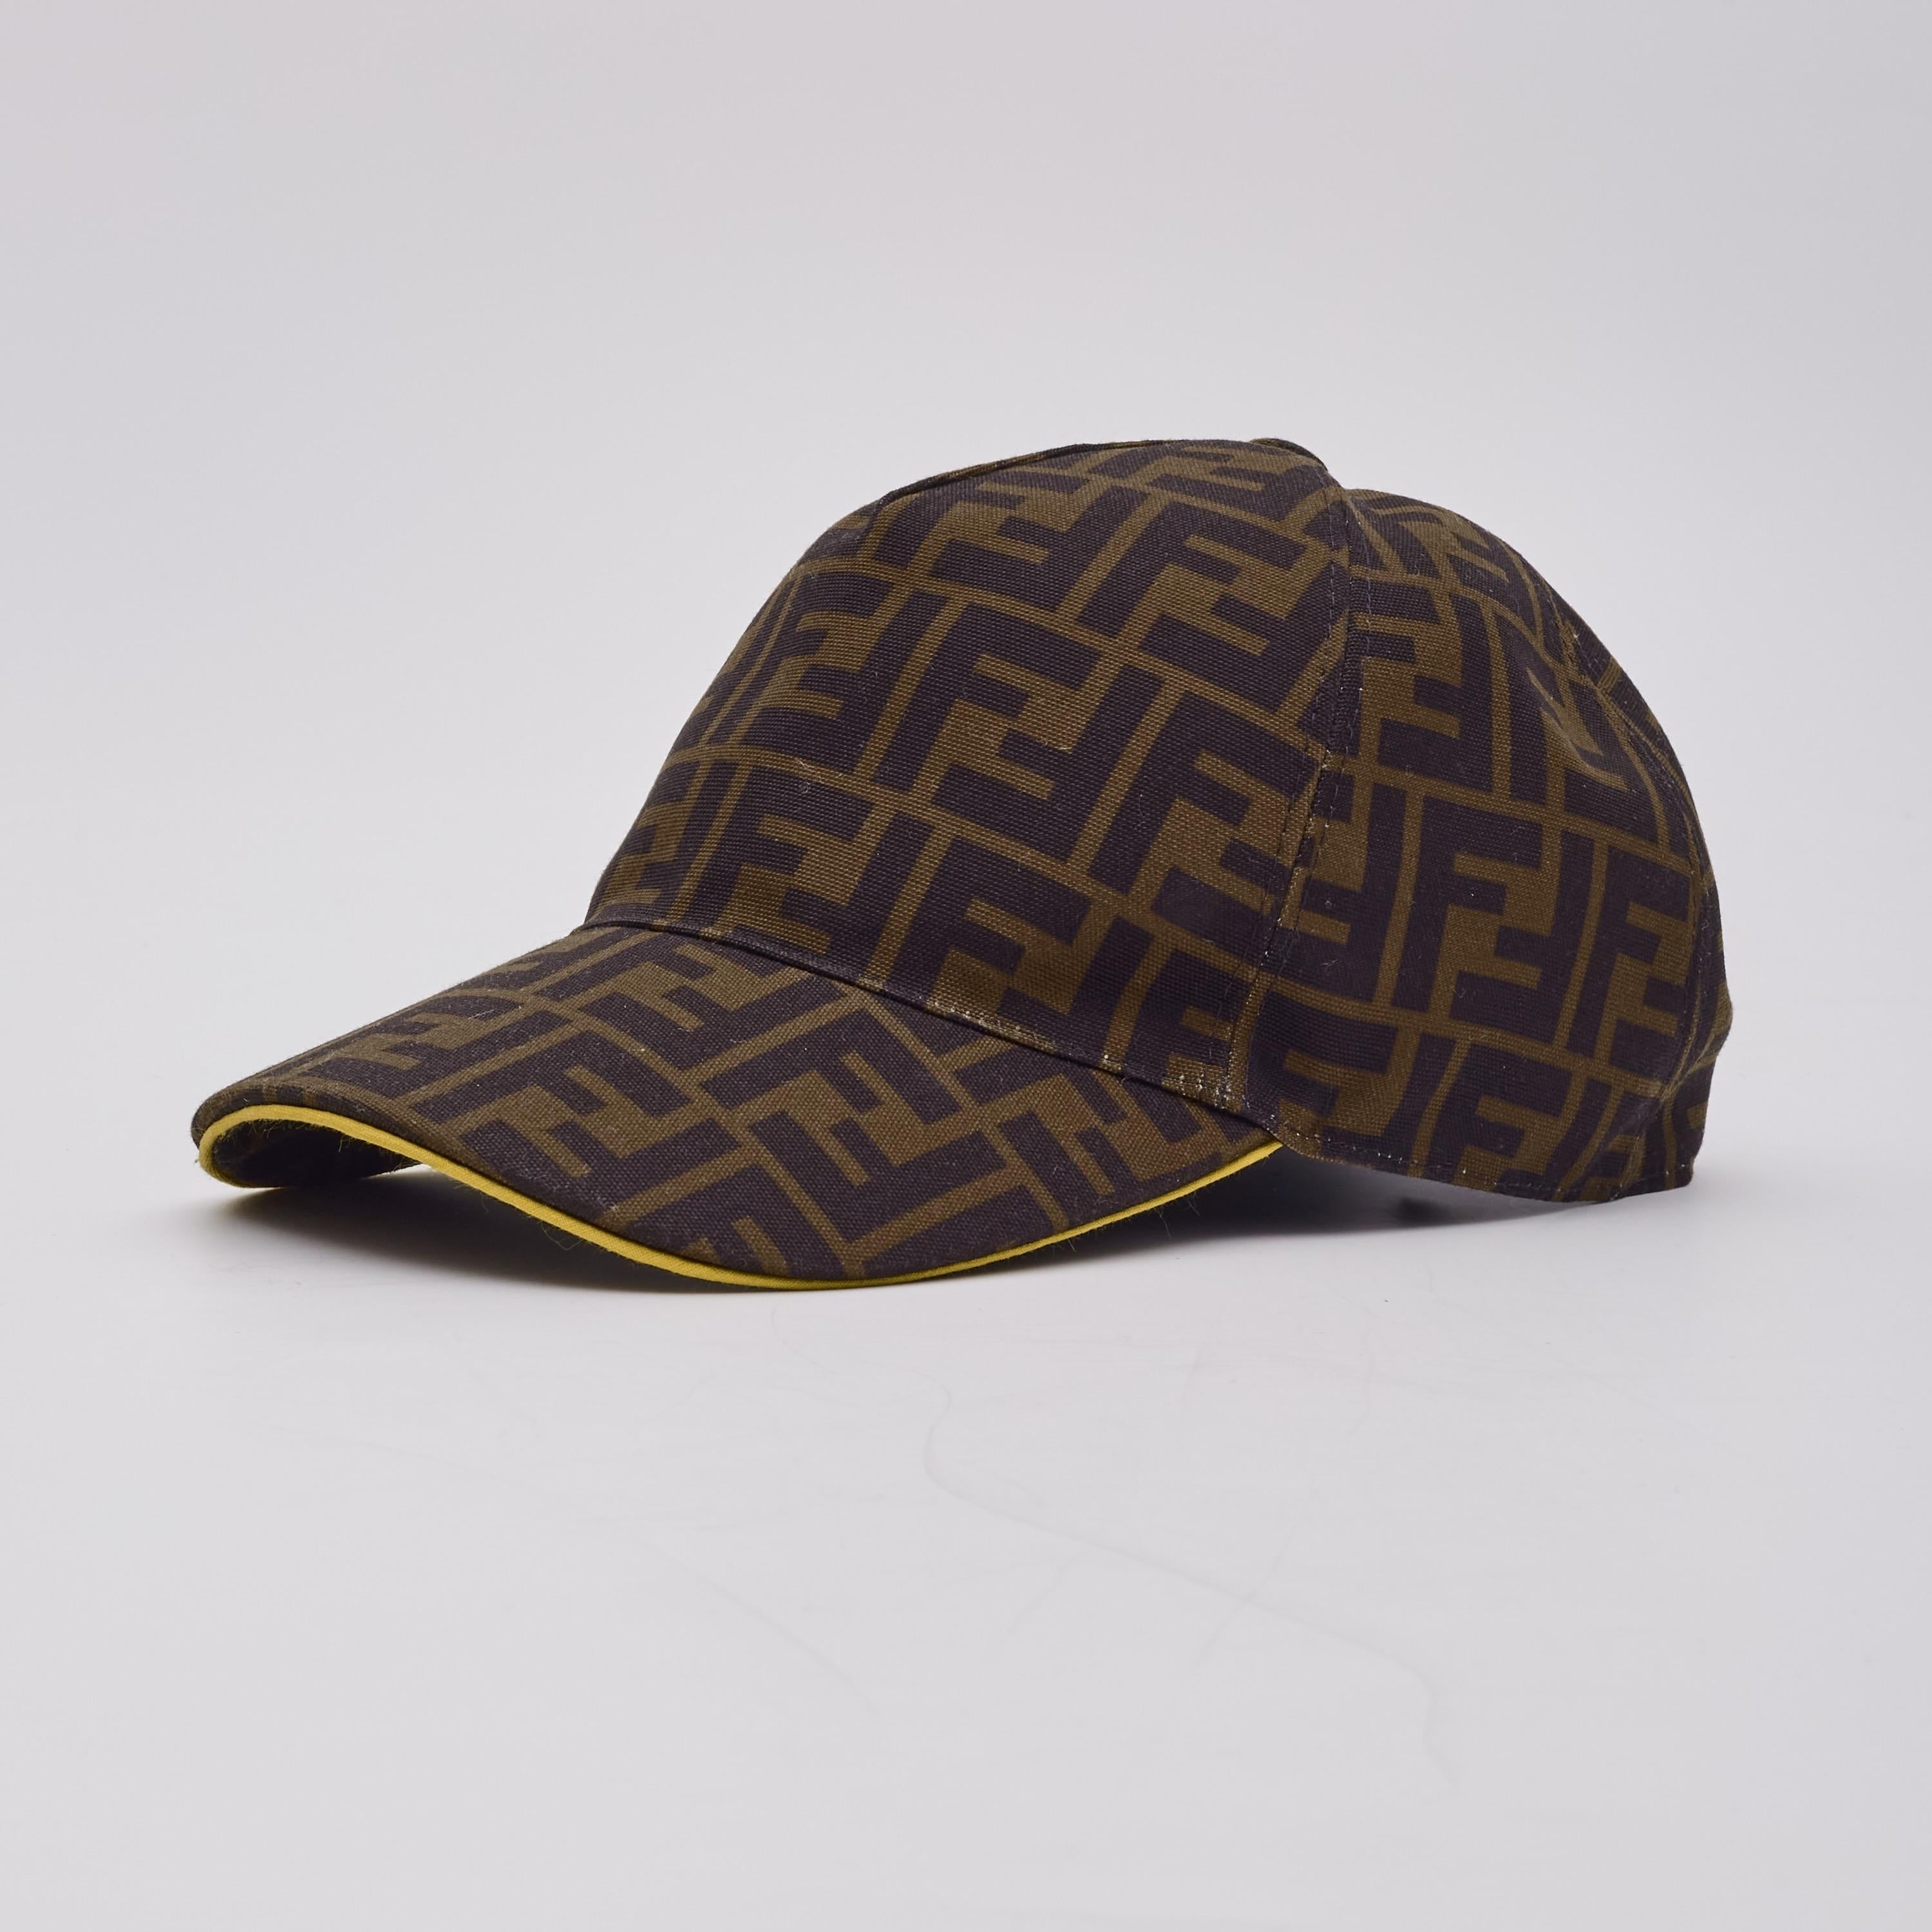 Diese modische Cap ist aus Fendi Zucca Monogram Canvas gefertigt. Das Innere ist mit schwarzem Stoff gefüttert und die Mütze hat eine kontrastierende gelbe Verzierung.

Farbe: tabakbraun mit schwarzem ff-Jacquard und gelber Verzierung
MATERIAL: 100%